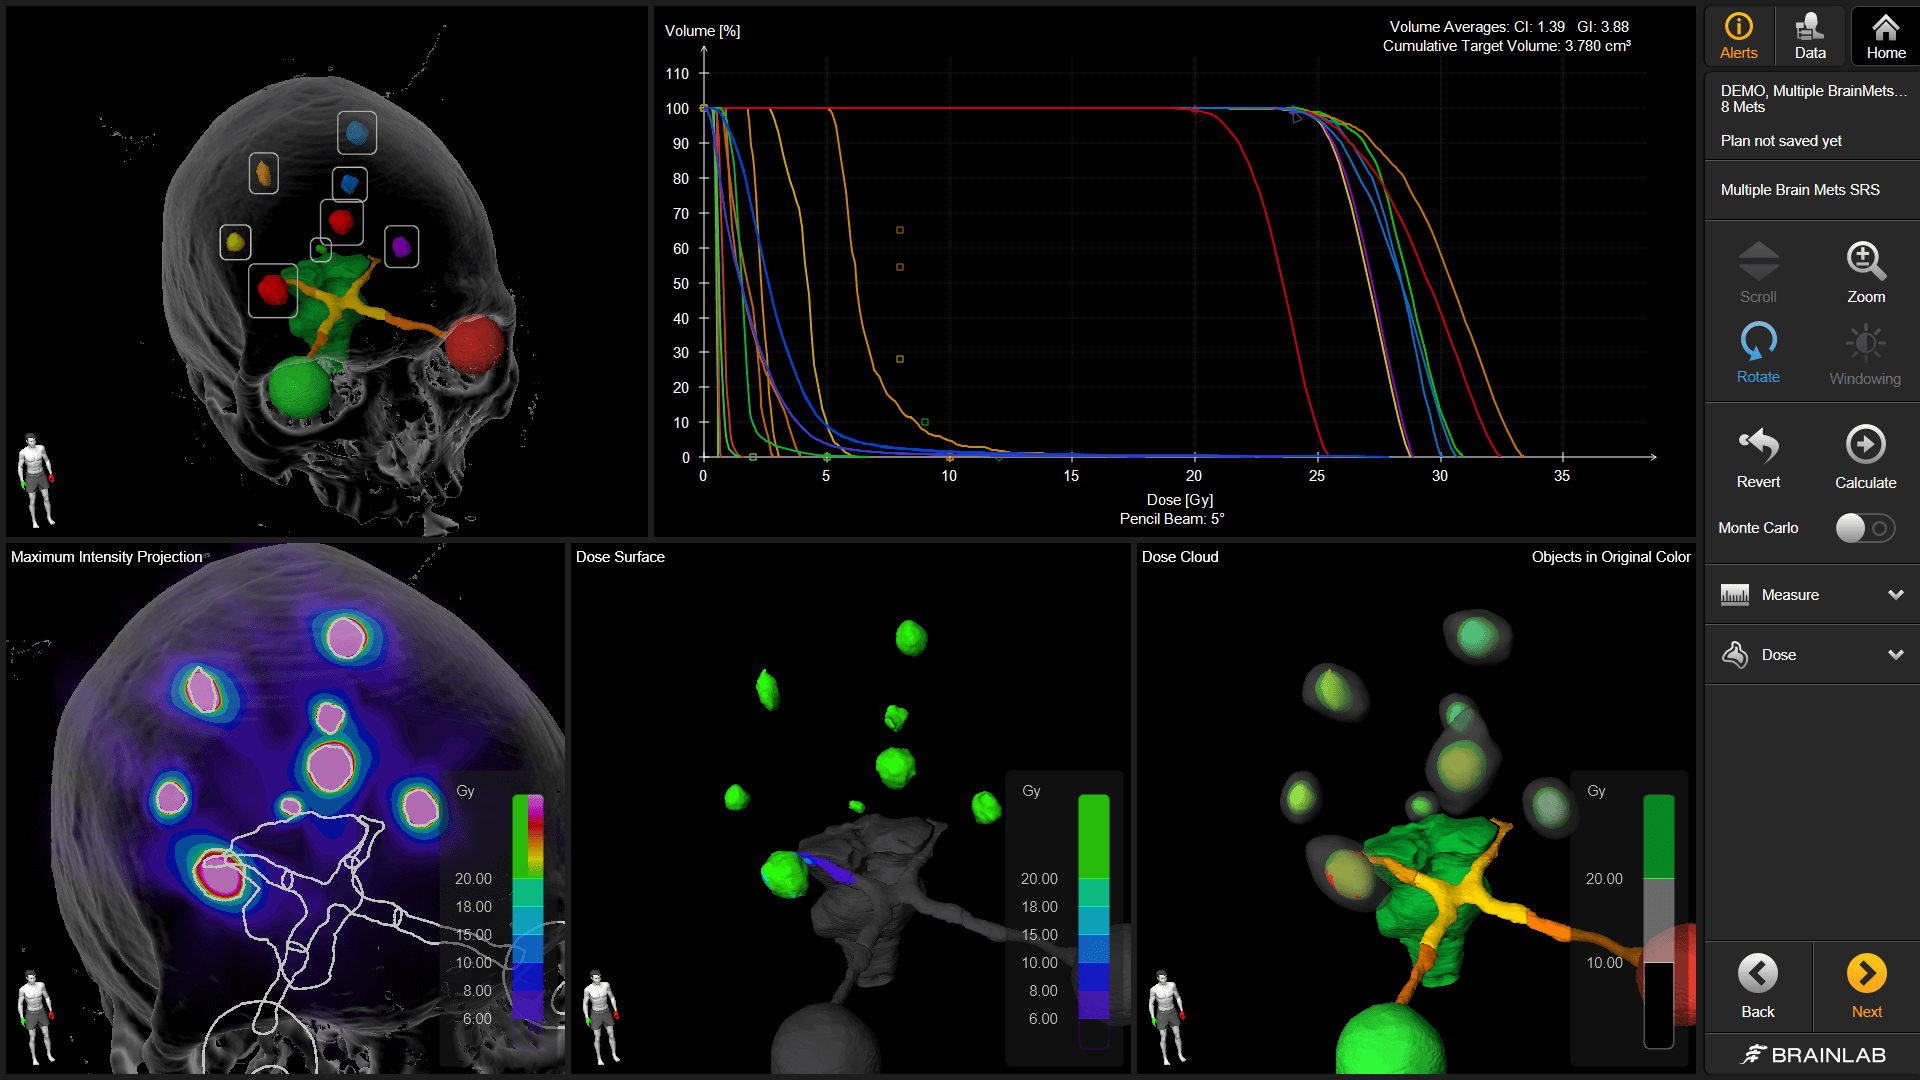 Captura de pantalla del software Brainlab Elements que muestra varias vistas e imágenes disponibles que ayudan a los usuarios a planificar de forma consistente tratamientos de radiocirugía y radioterapia.